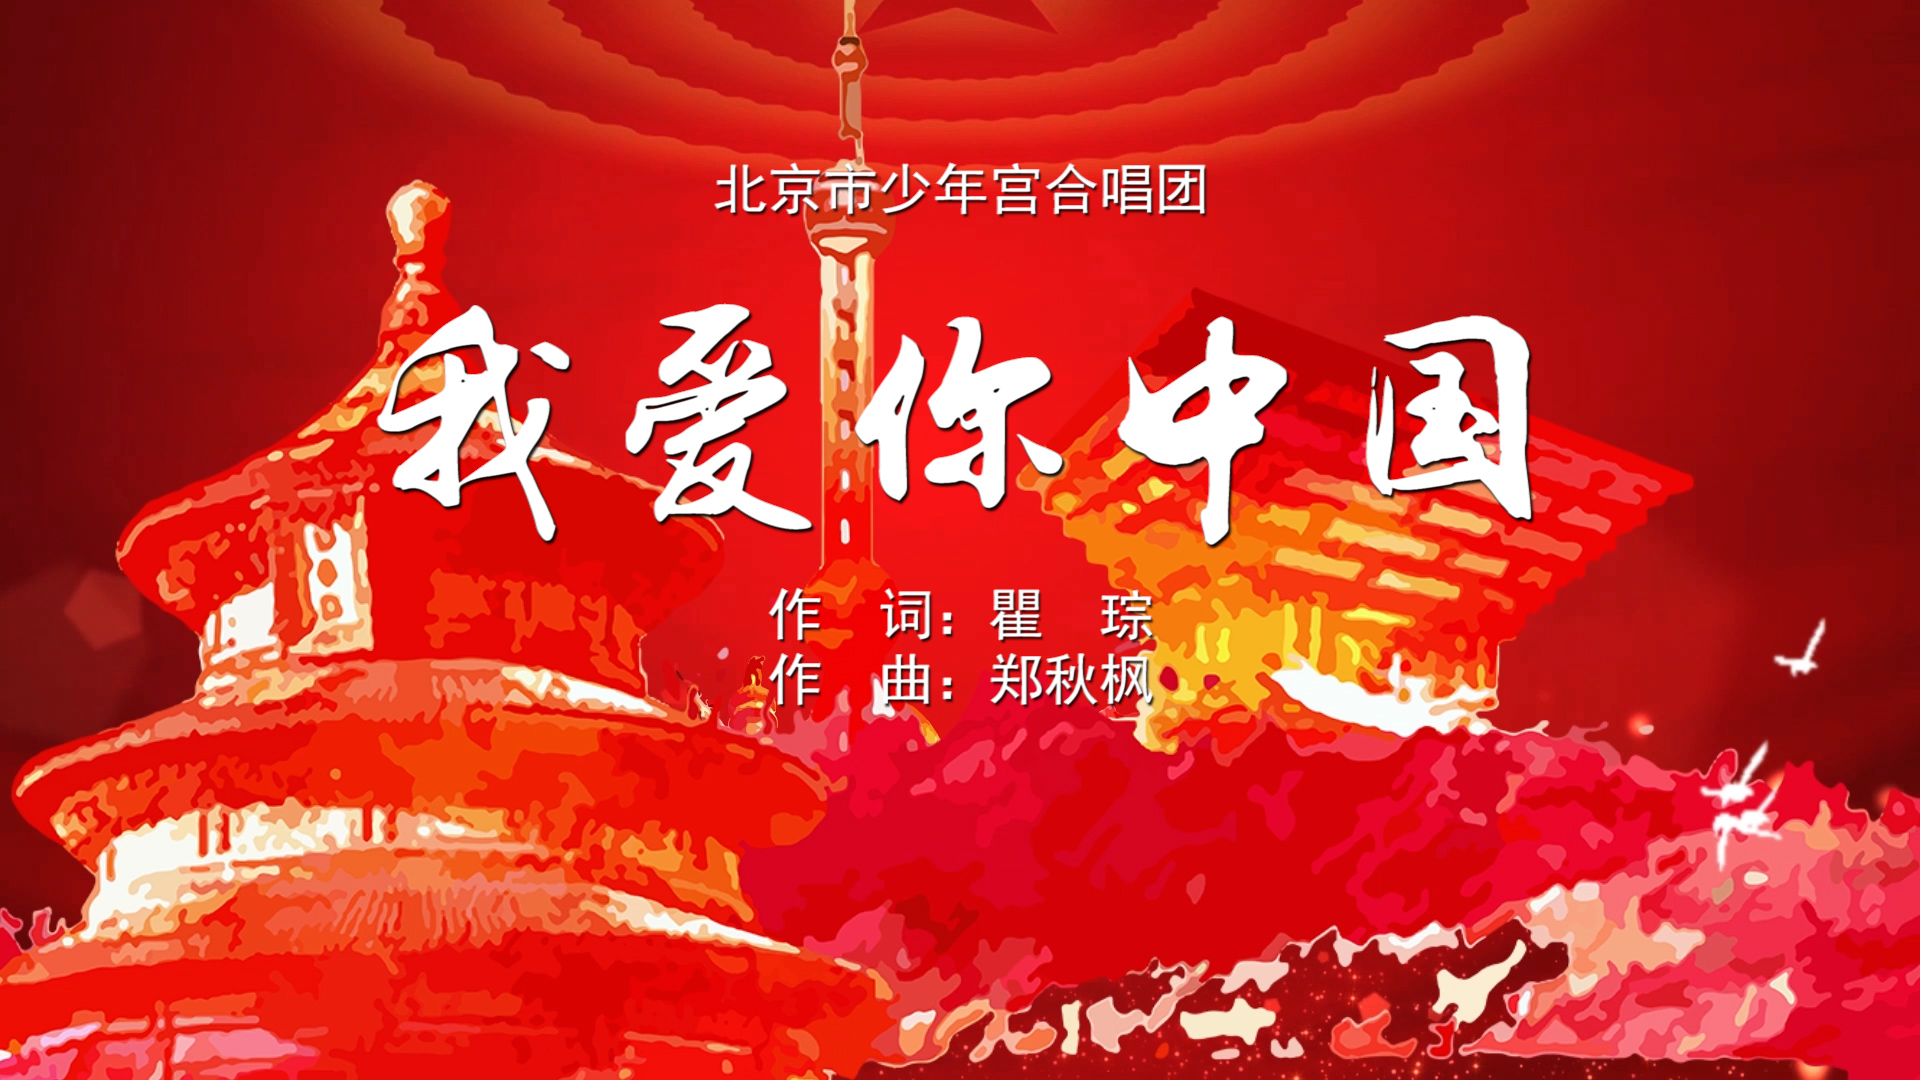 我爱你中国 北京市少年宫合唱团MV字幕配乐伴奏舞台演出LED背景大屏幕视频素材